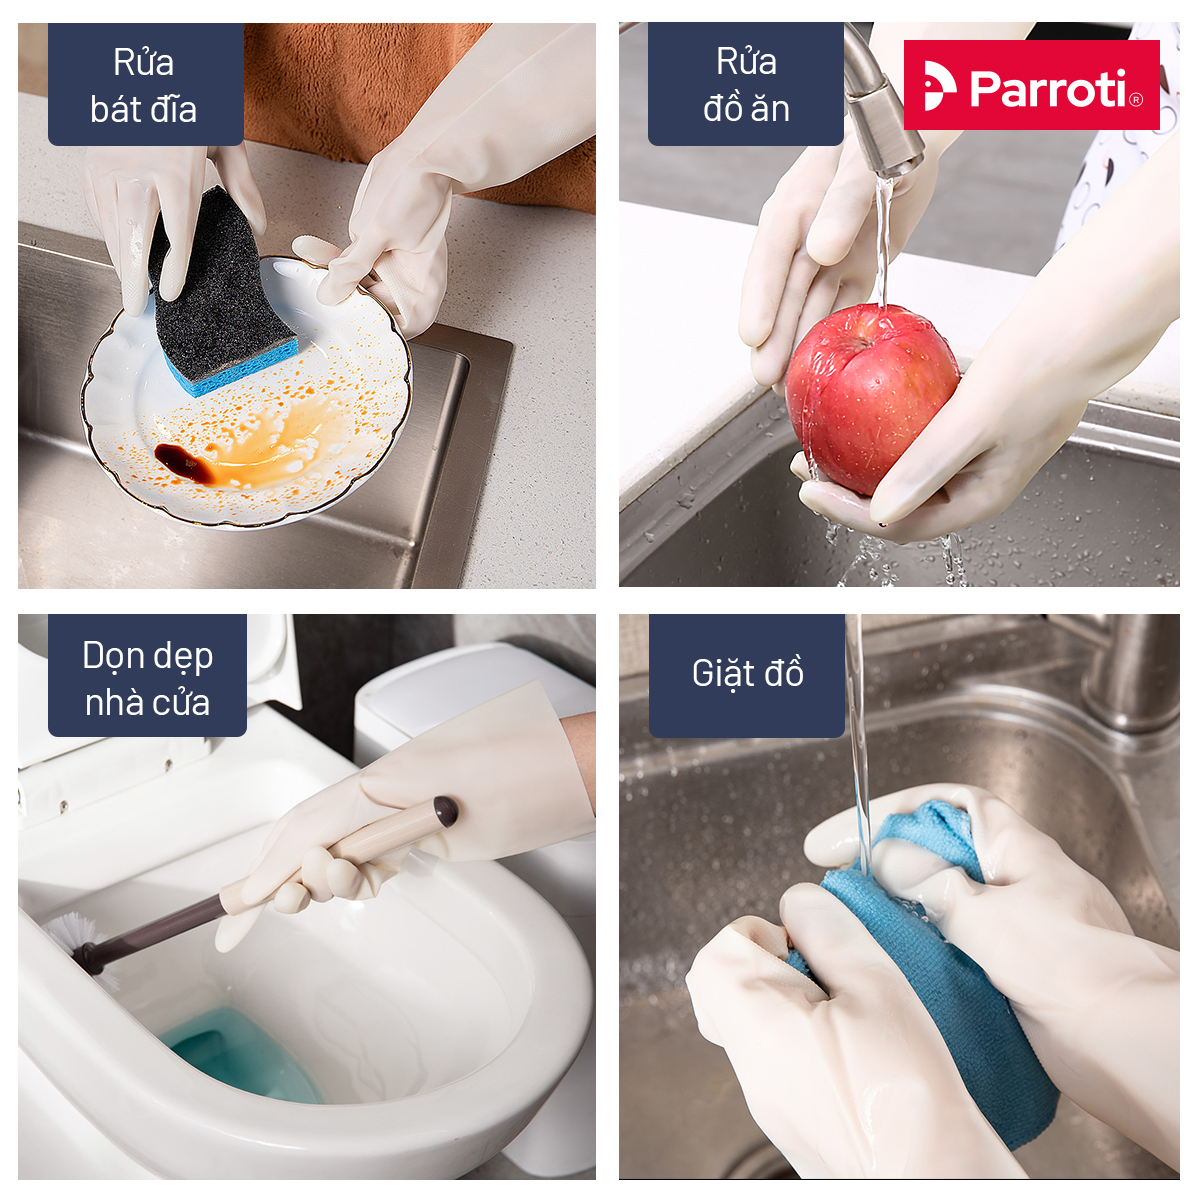 Găng tay cao su siêu dai rửa bát, bao tay cao su rửa chén, vệ sinh nhà cửa, an toàn, không mùi hôi Parroti Active AT01